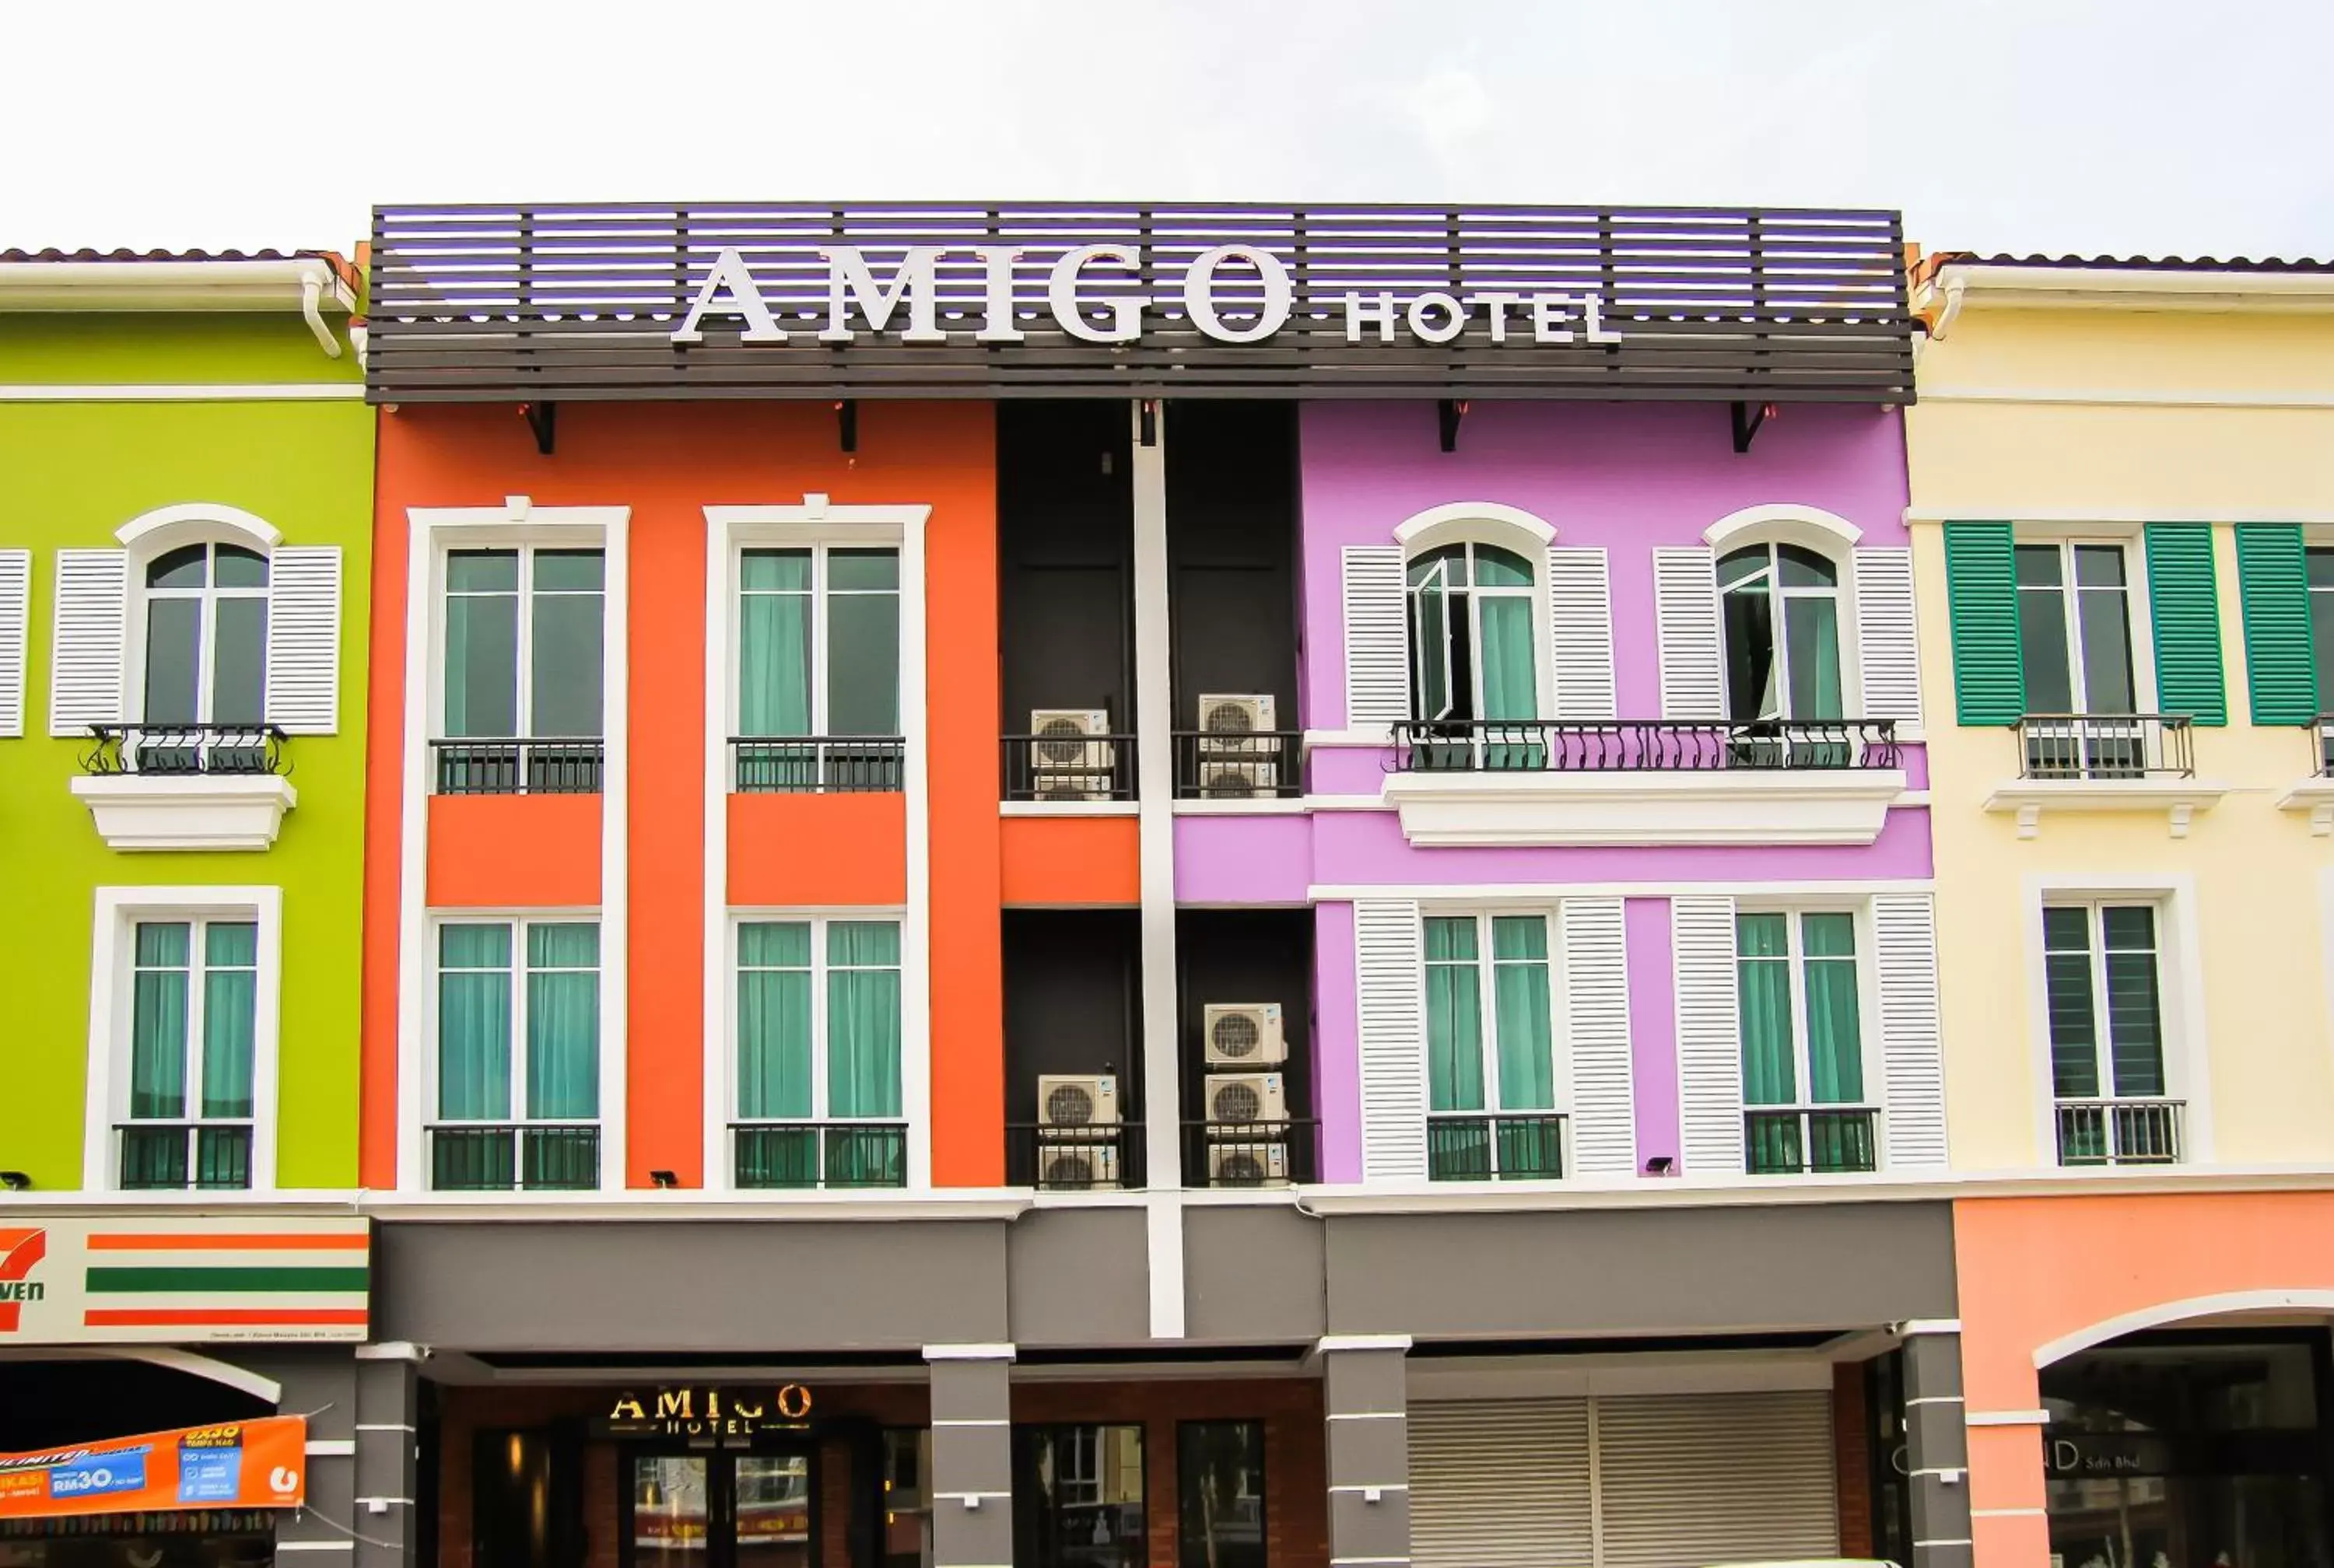 Property building in Amigo Hotel